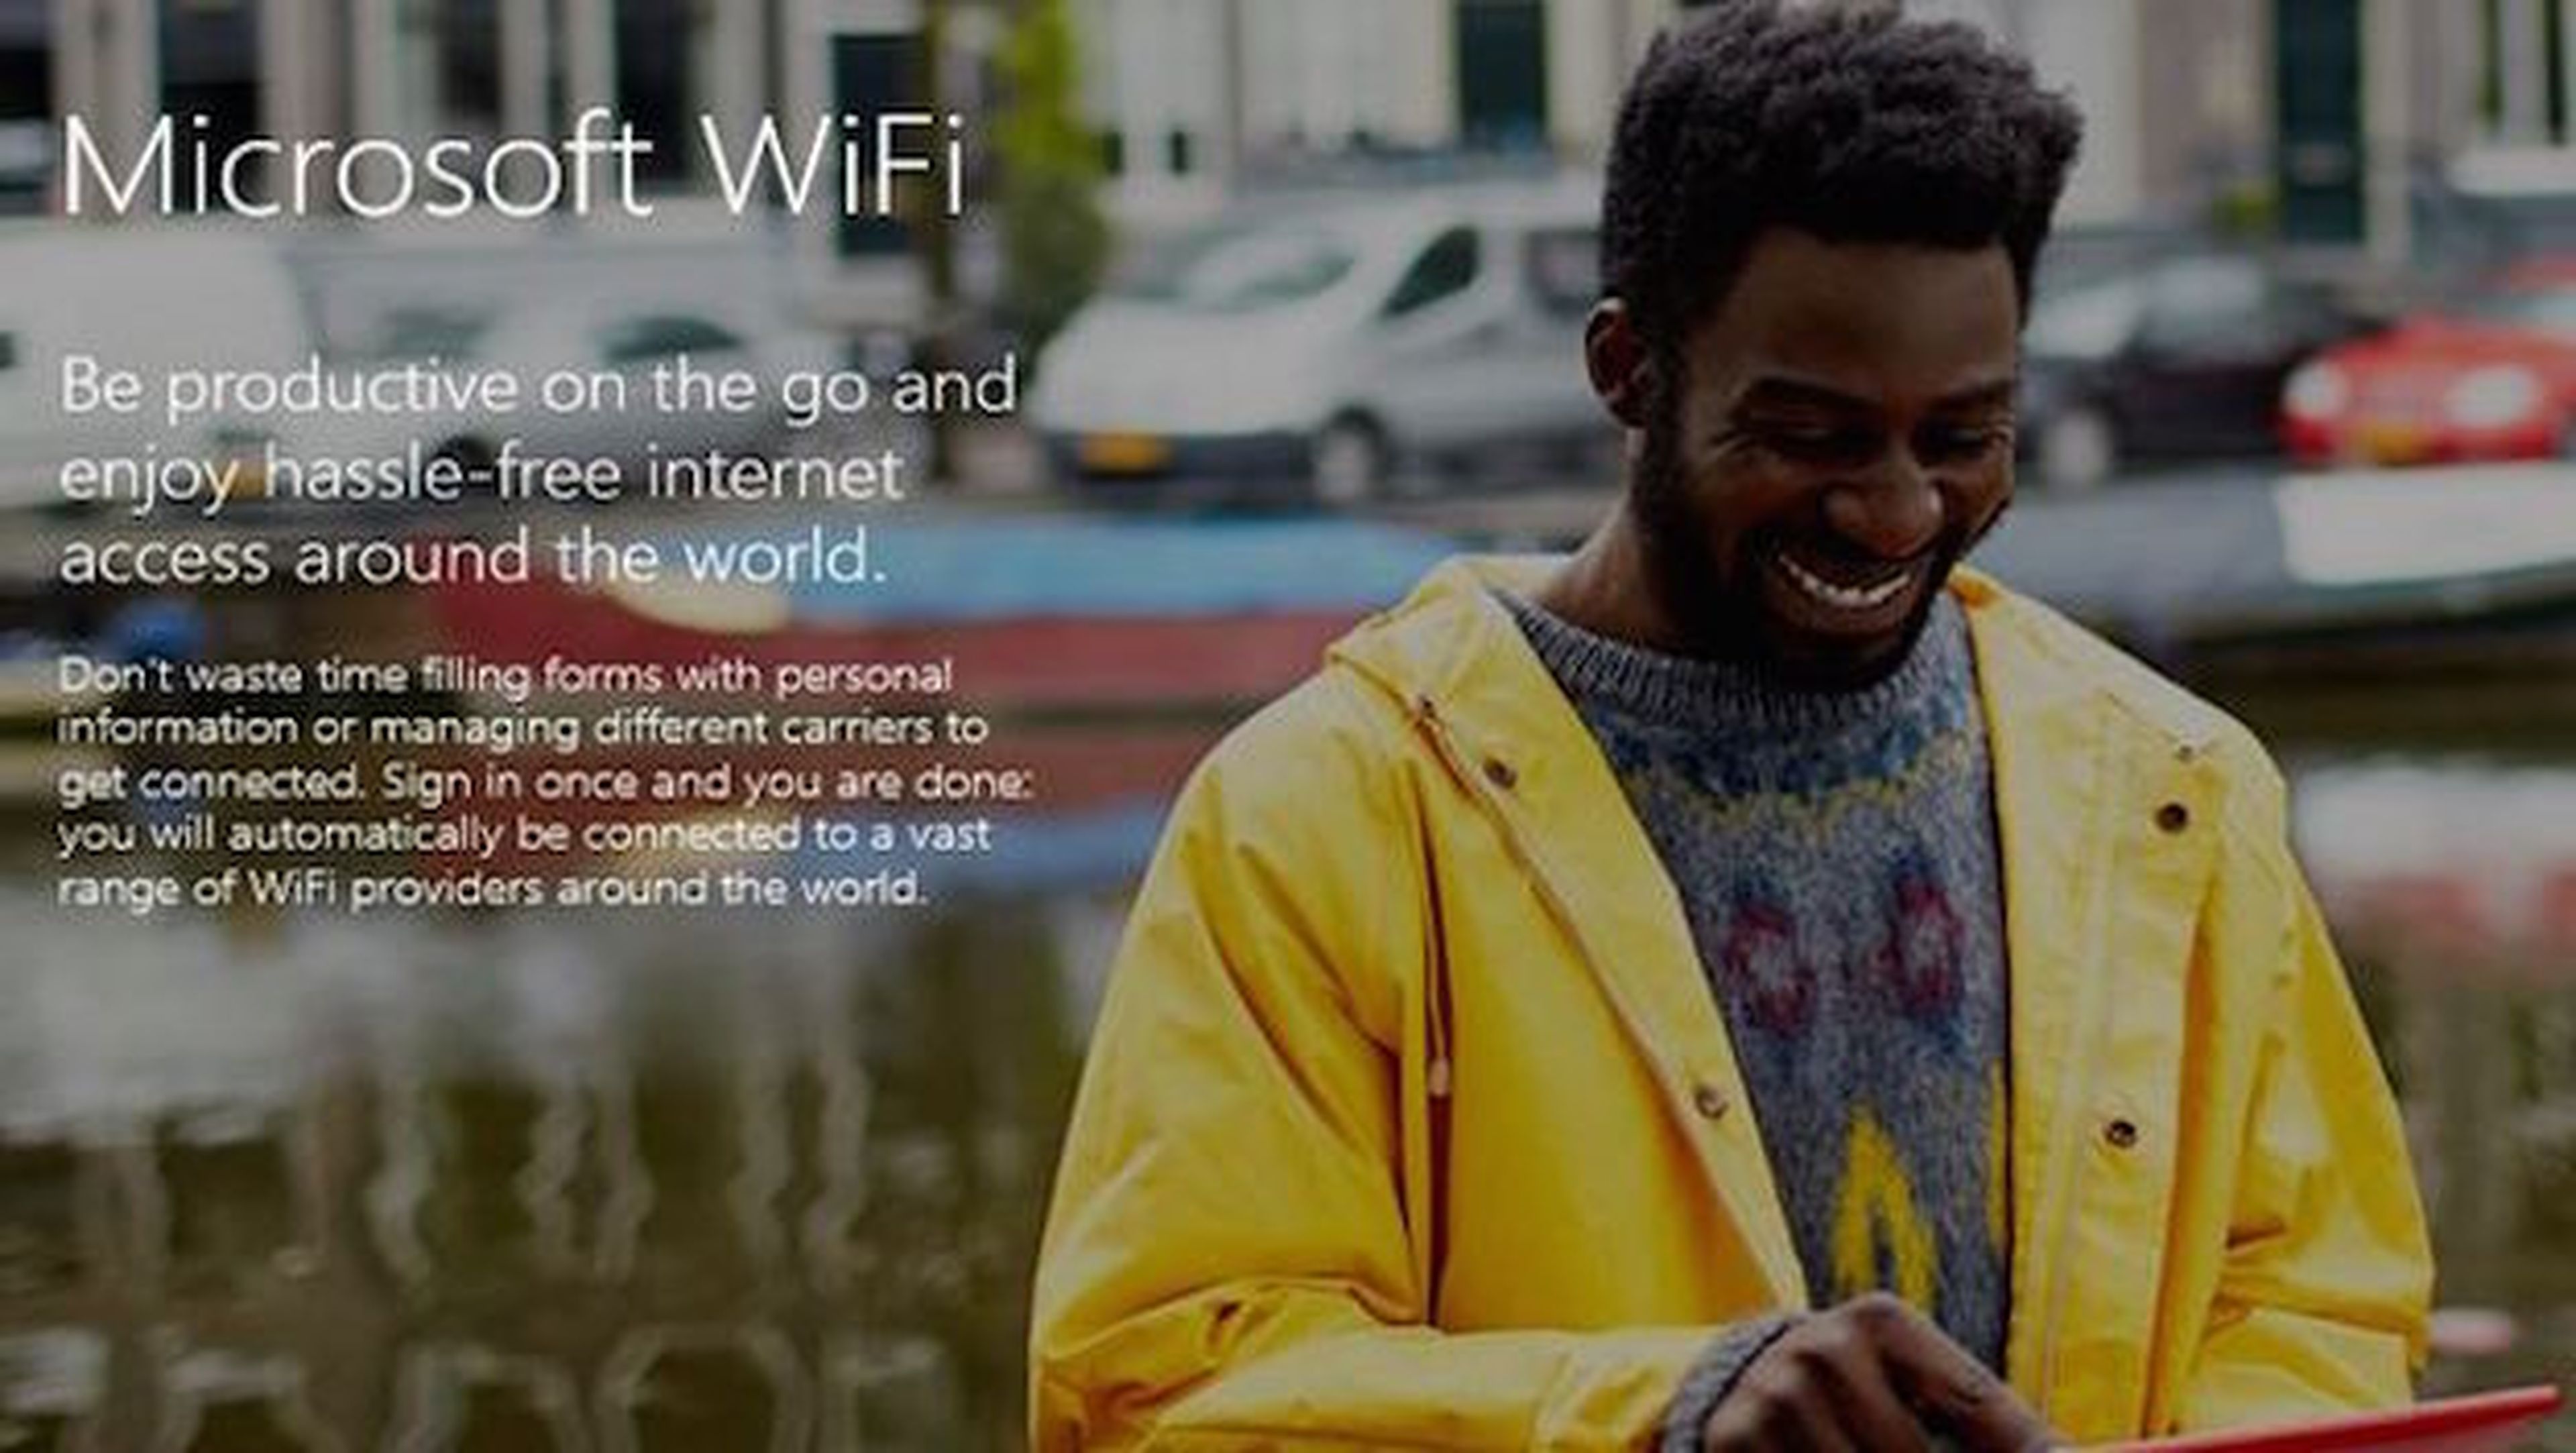 Microsoft relanzará servicio de wifi con nuevo nombre